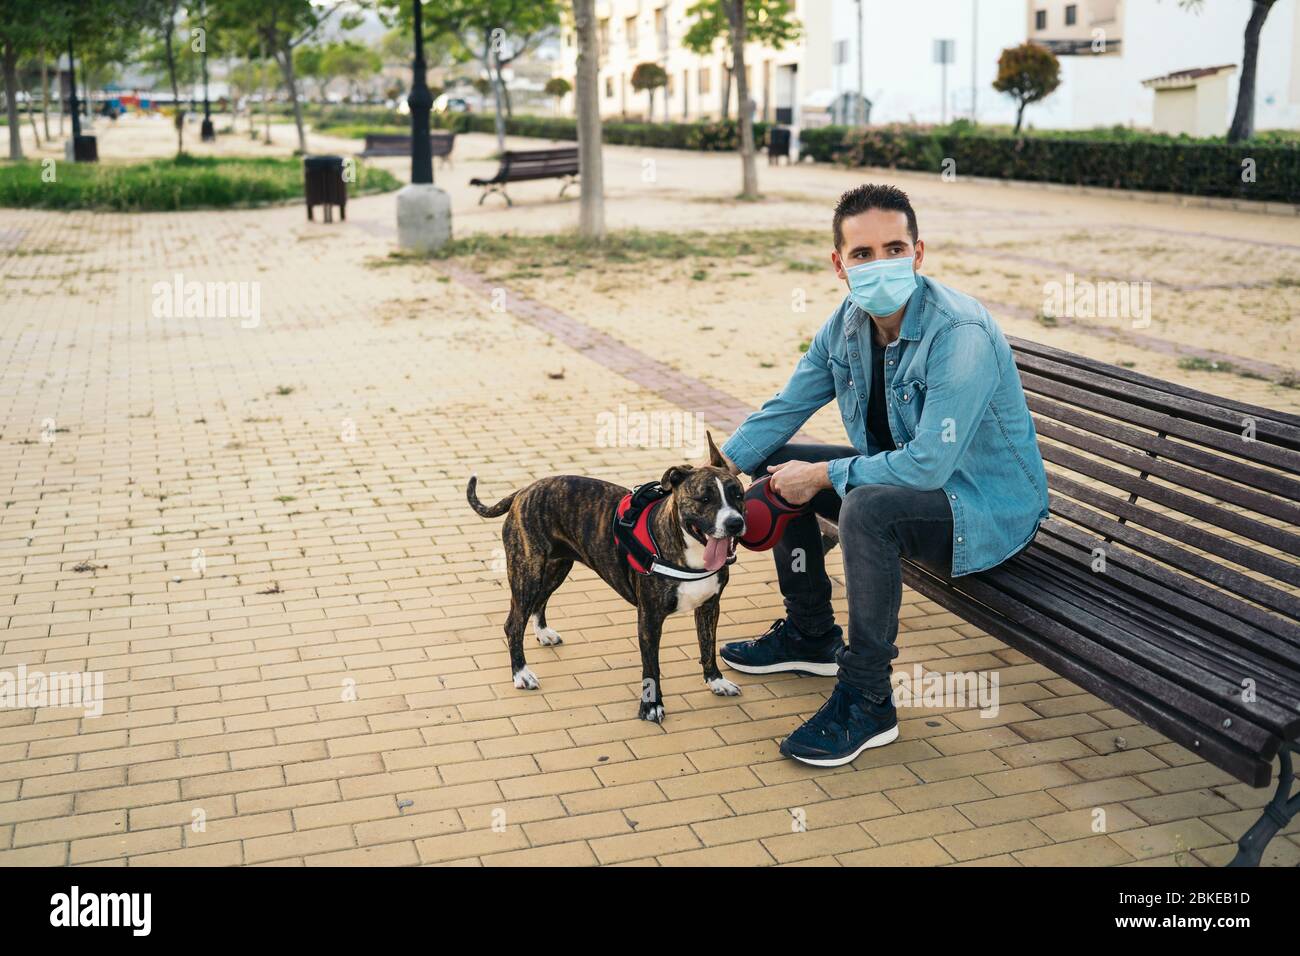 Giovane uomo in maschera medica seduto su una panchina nel parco con il suo cane. Covid-19 coronavirus pandemico. Vita attiva in quarantena nell'epidemia di Corona. Foto Stock